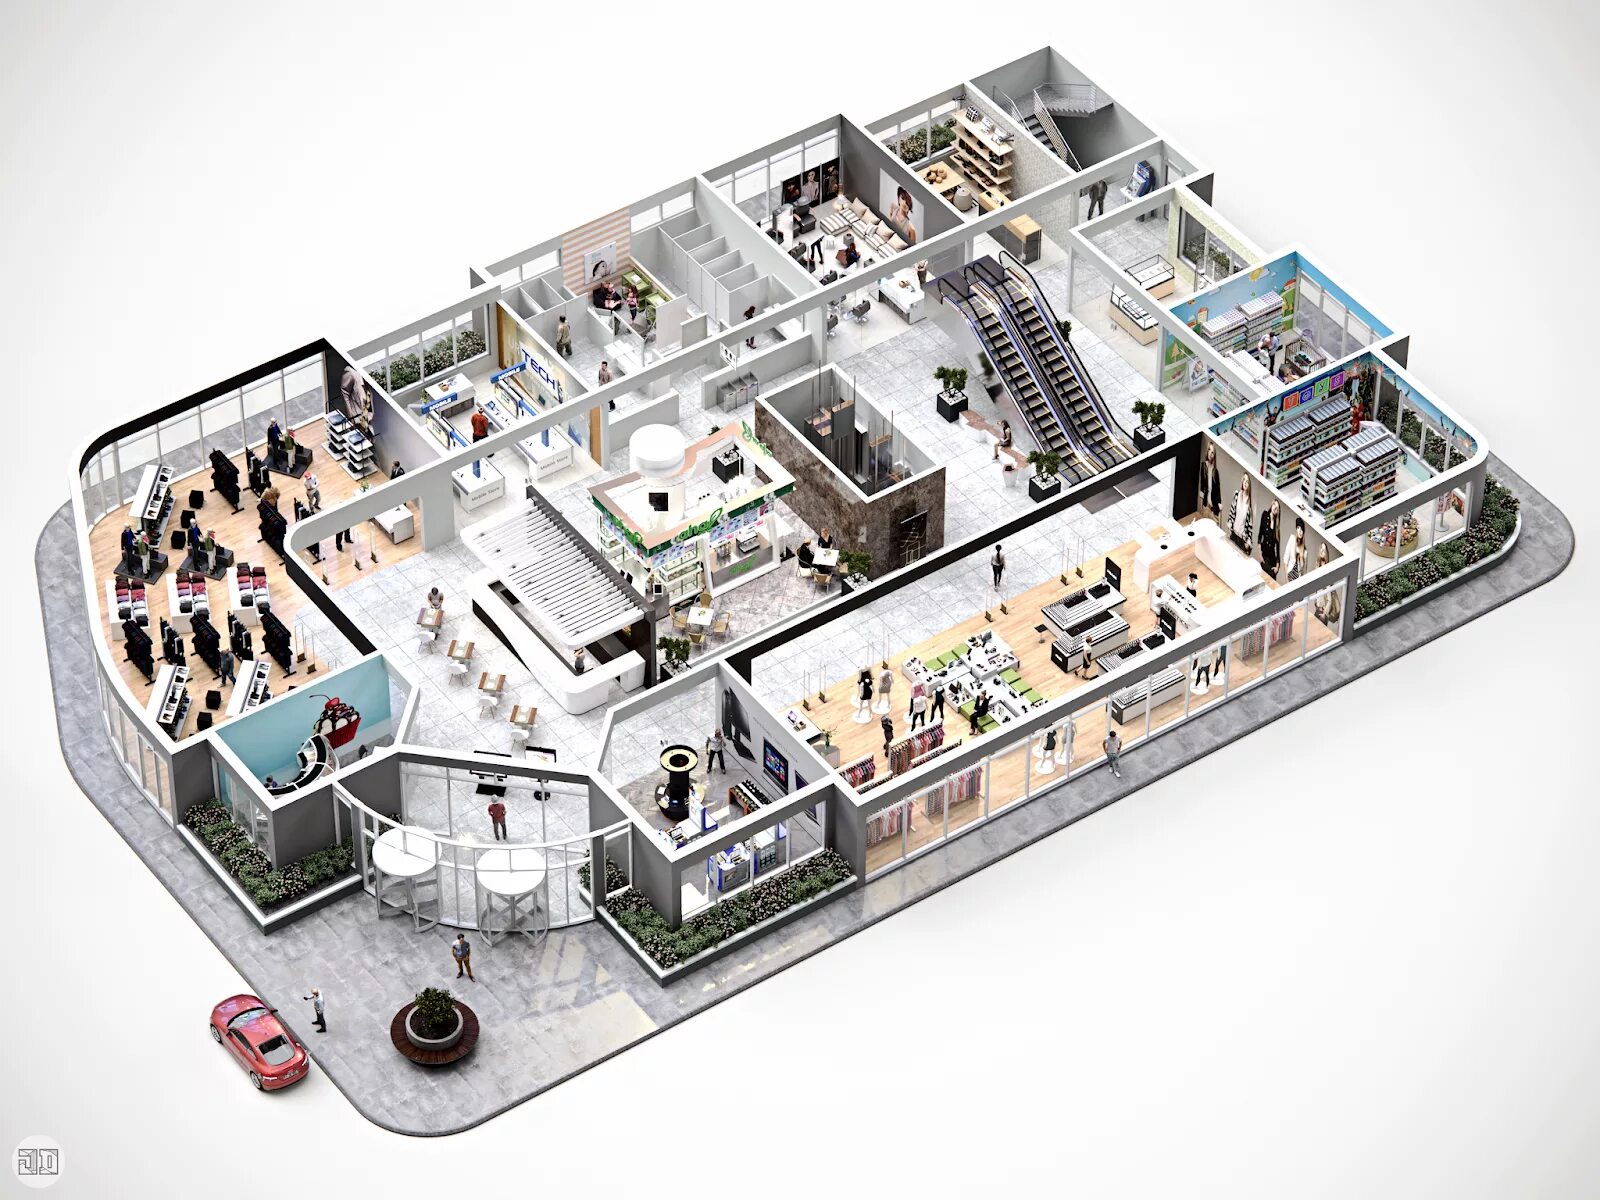 Макет торгового центра. Интерактивный план здания. Трехмерная модель помещения. План магазина 3д.